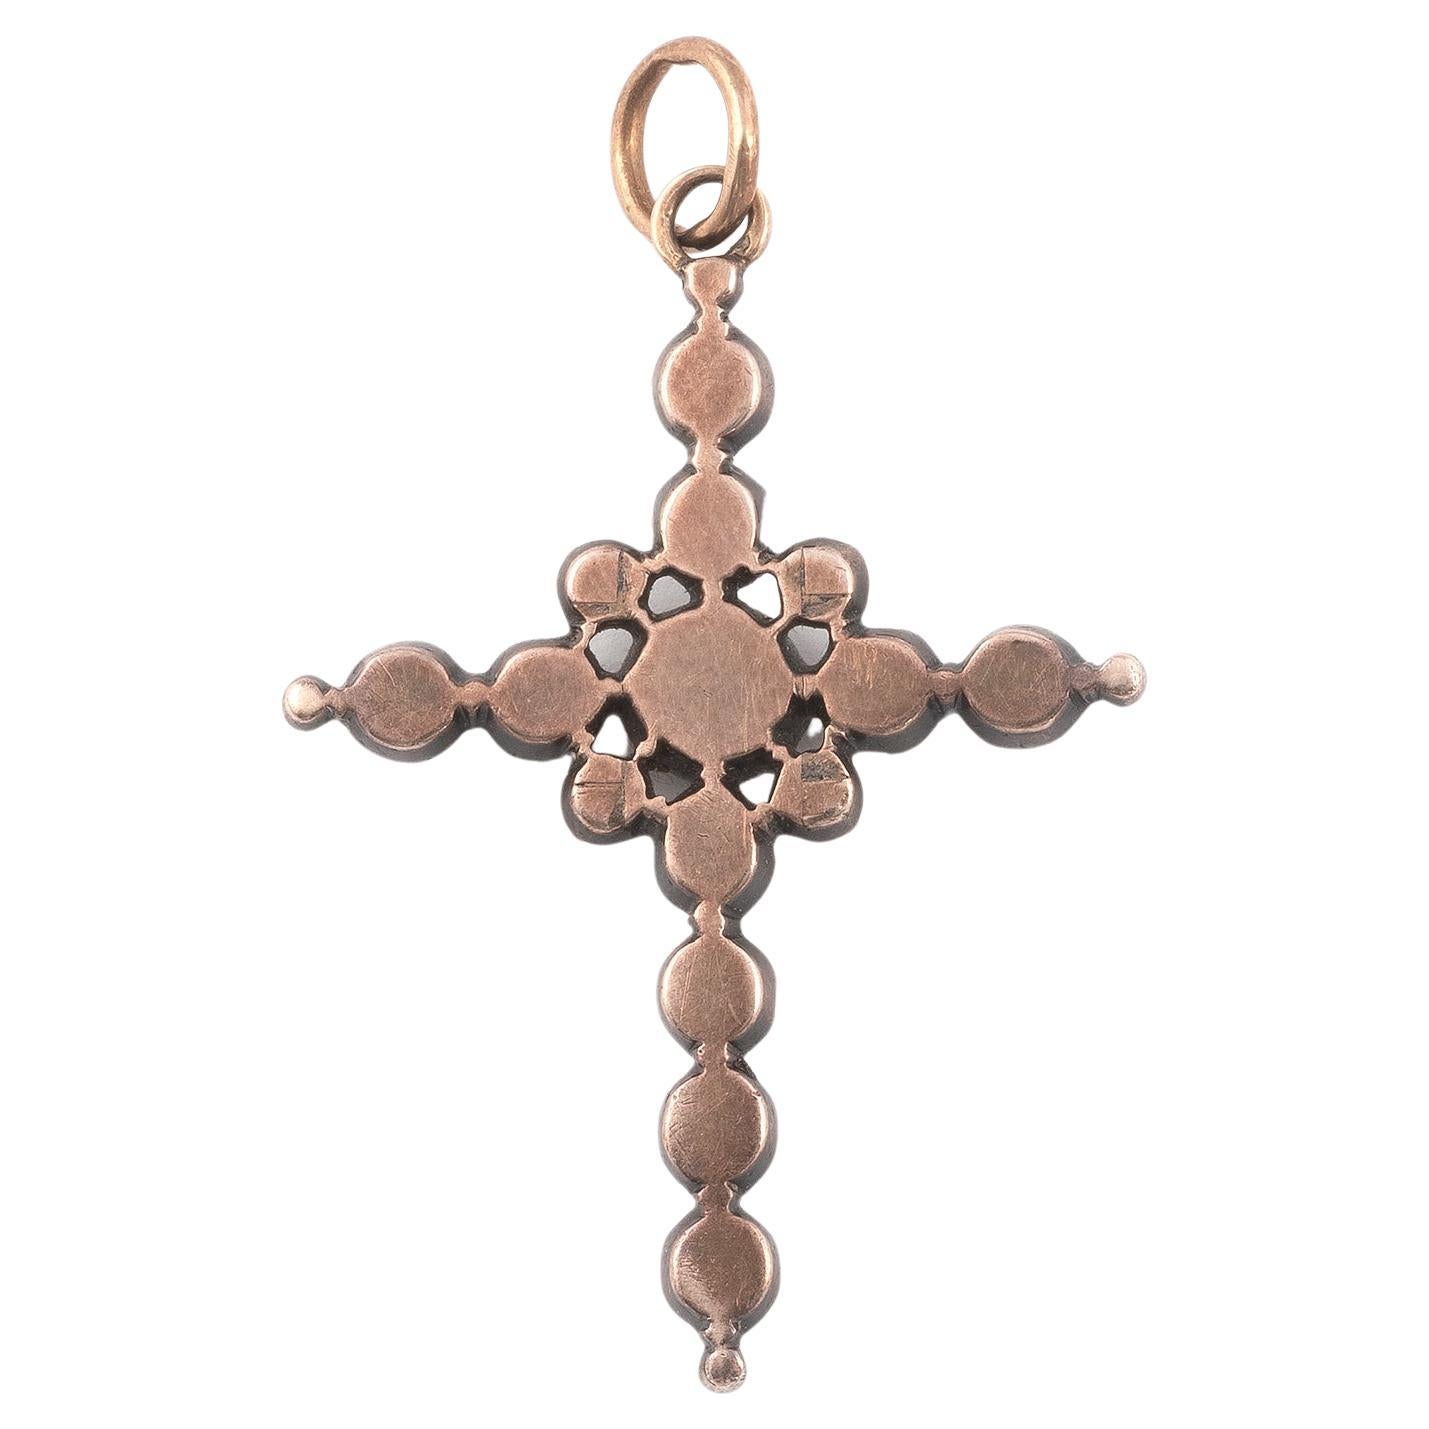 Das lateinische Kreuz, besetzt mit Diamanten im Rosenschliff in erhöhter, geschlossener Fassung.
Montiert in Silber und Gold, Länge: Anhänger 3,7 cm